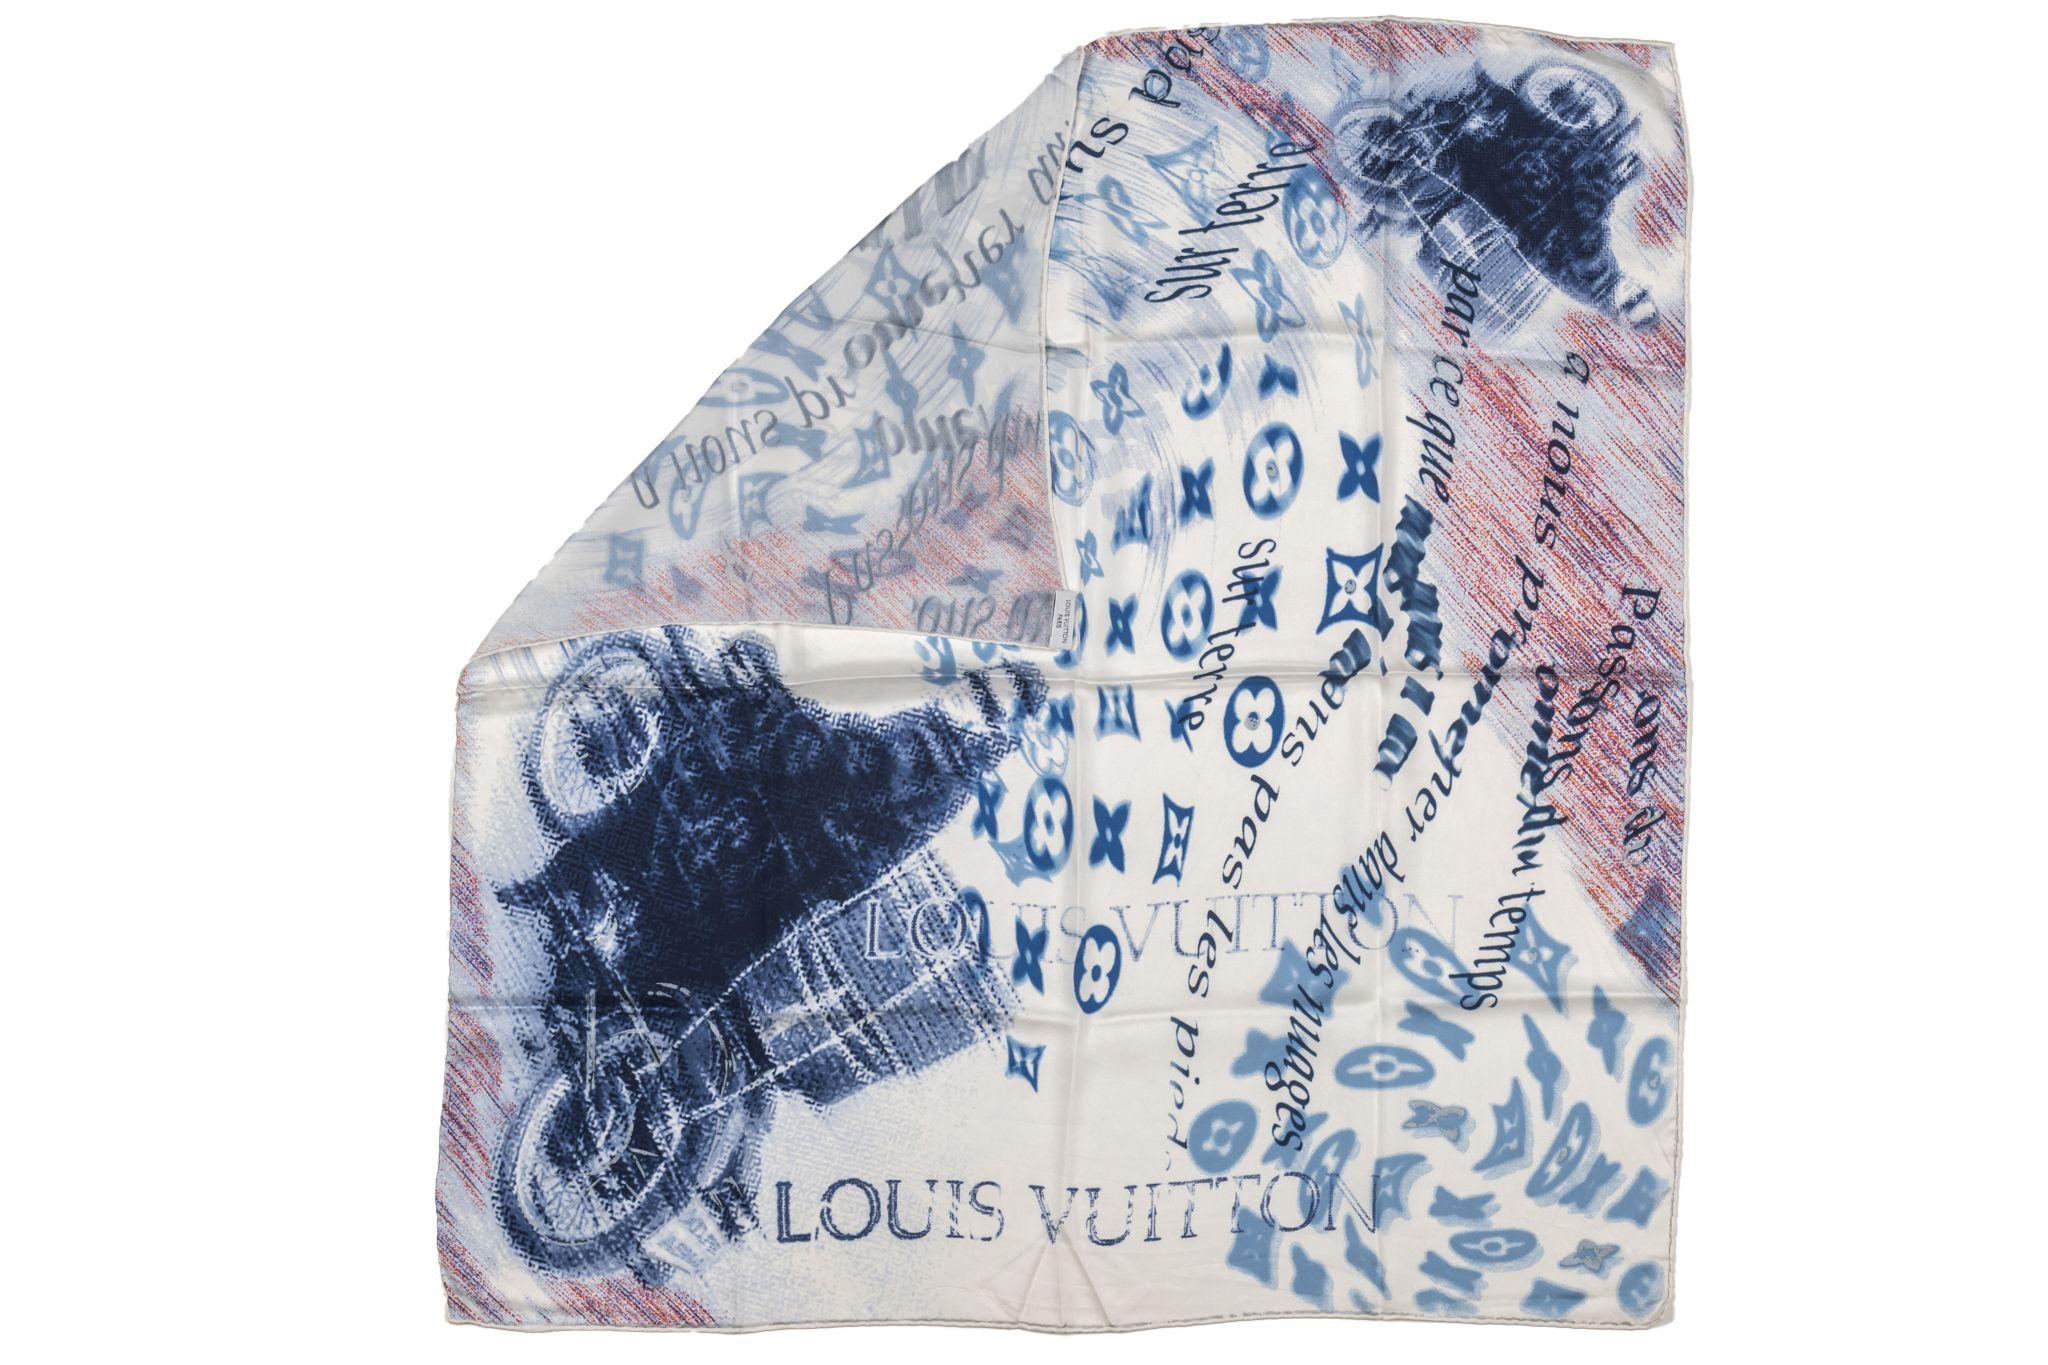 Foulard en soie Louis Vuitton Motorcycle. Le motif représente un graffiti de moto et les logos LV. L'article est en excellent état.